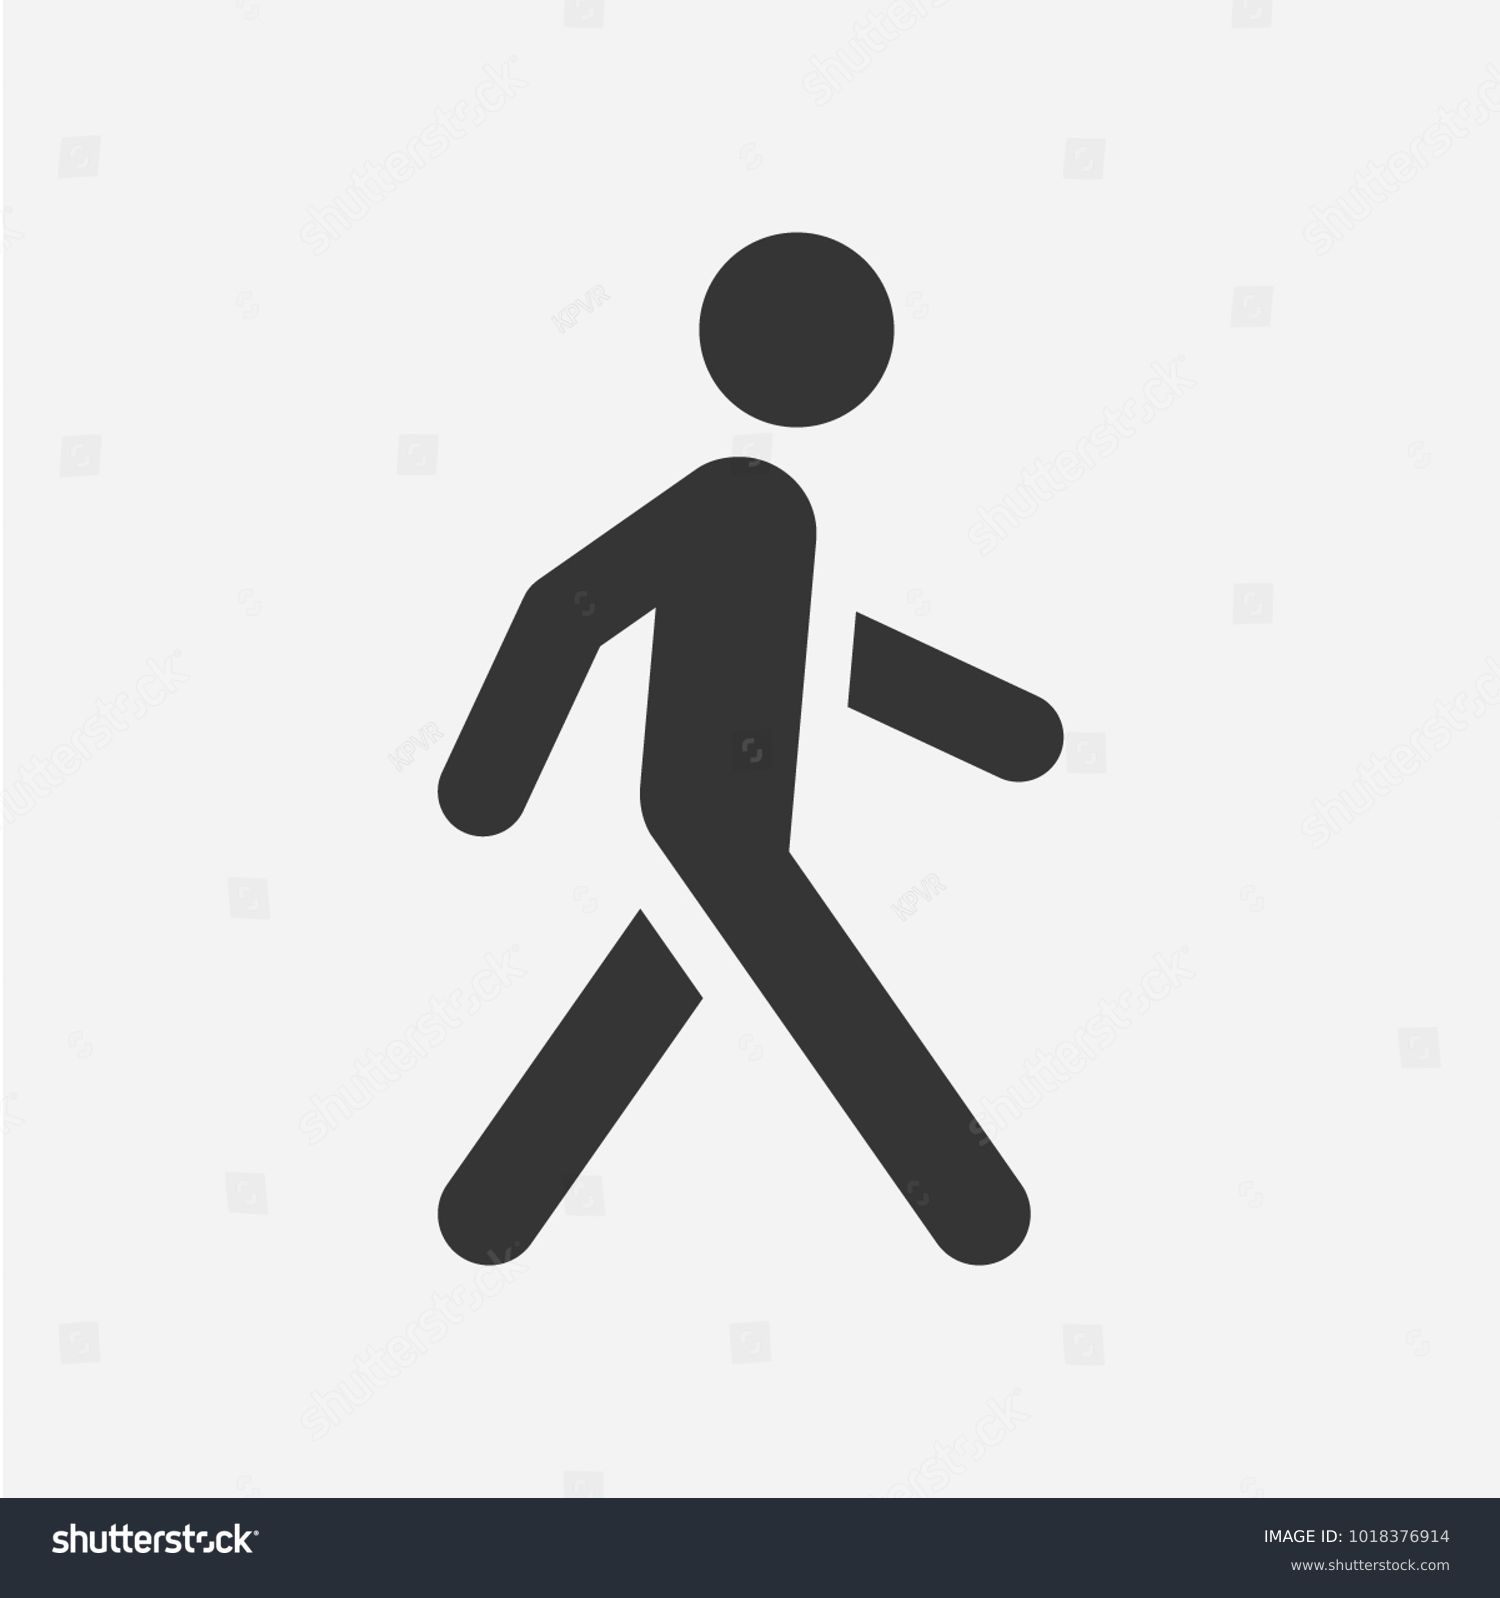 Walking man. Vector icon #1018376914